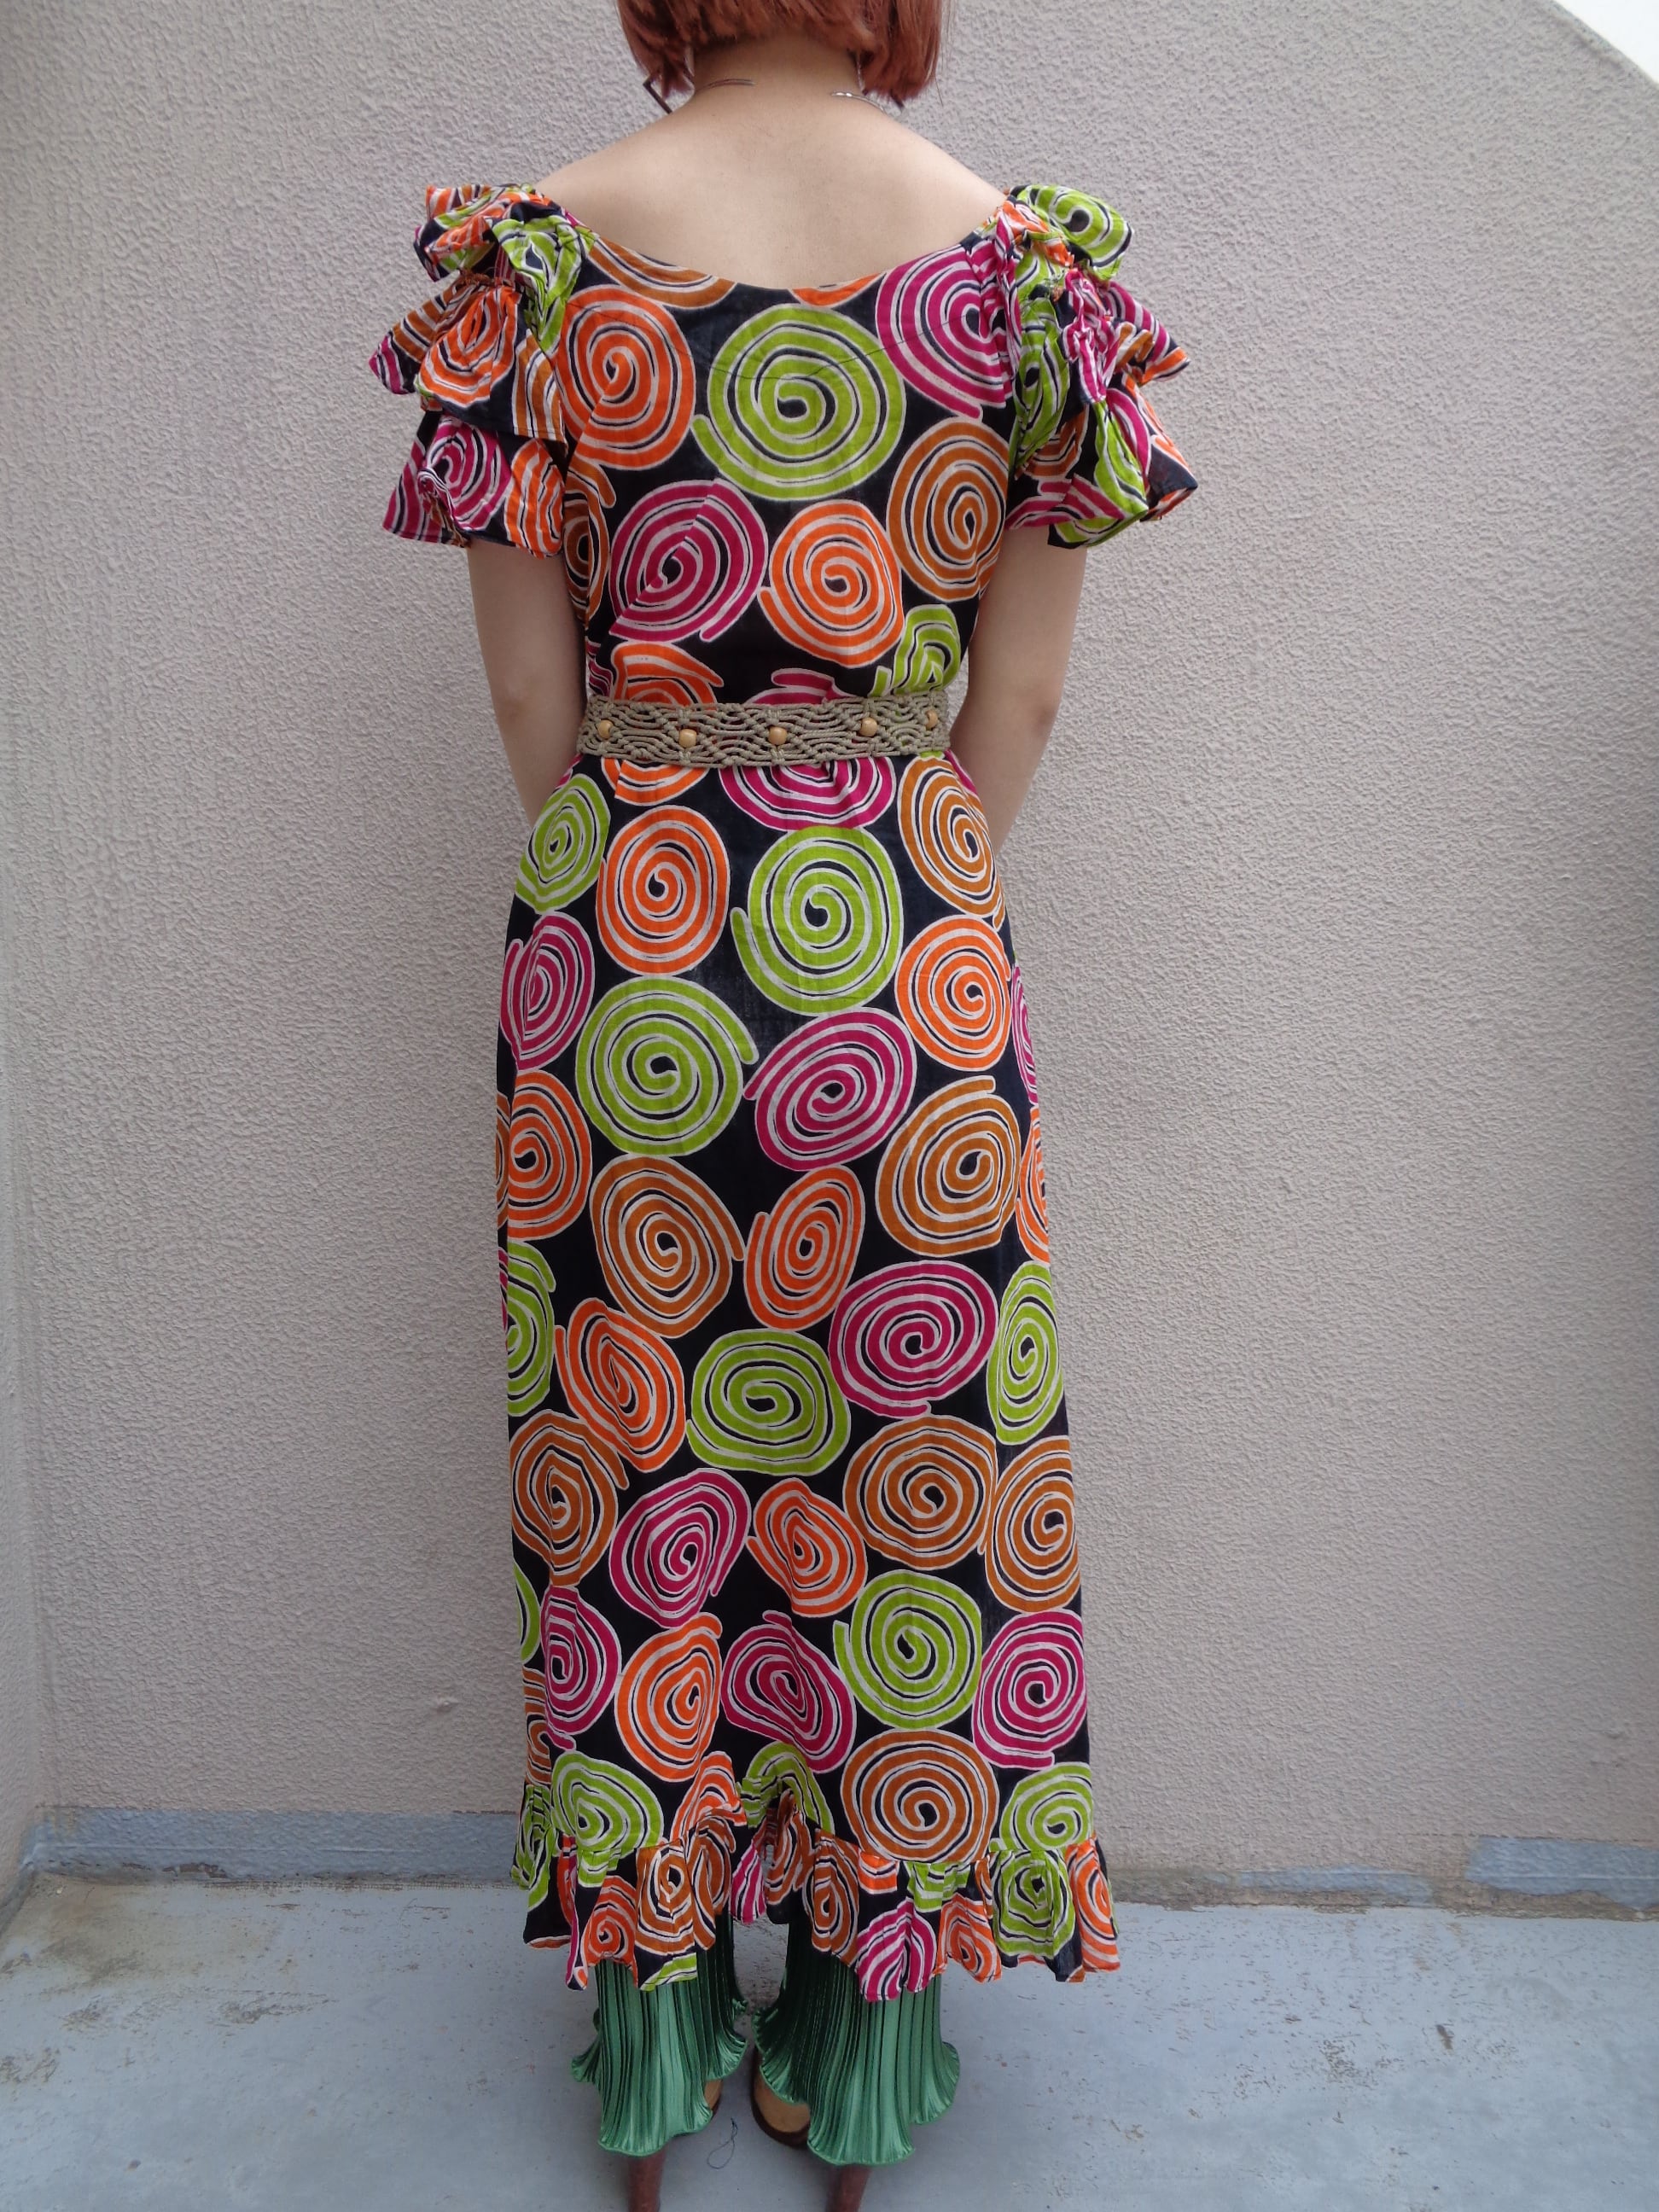 African batik dress／アフリカン バティックドレス | BIG TIME ...